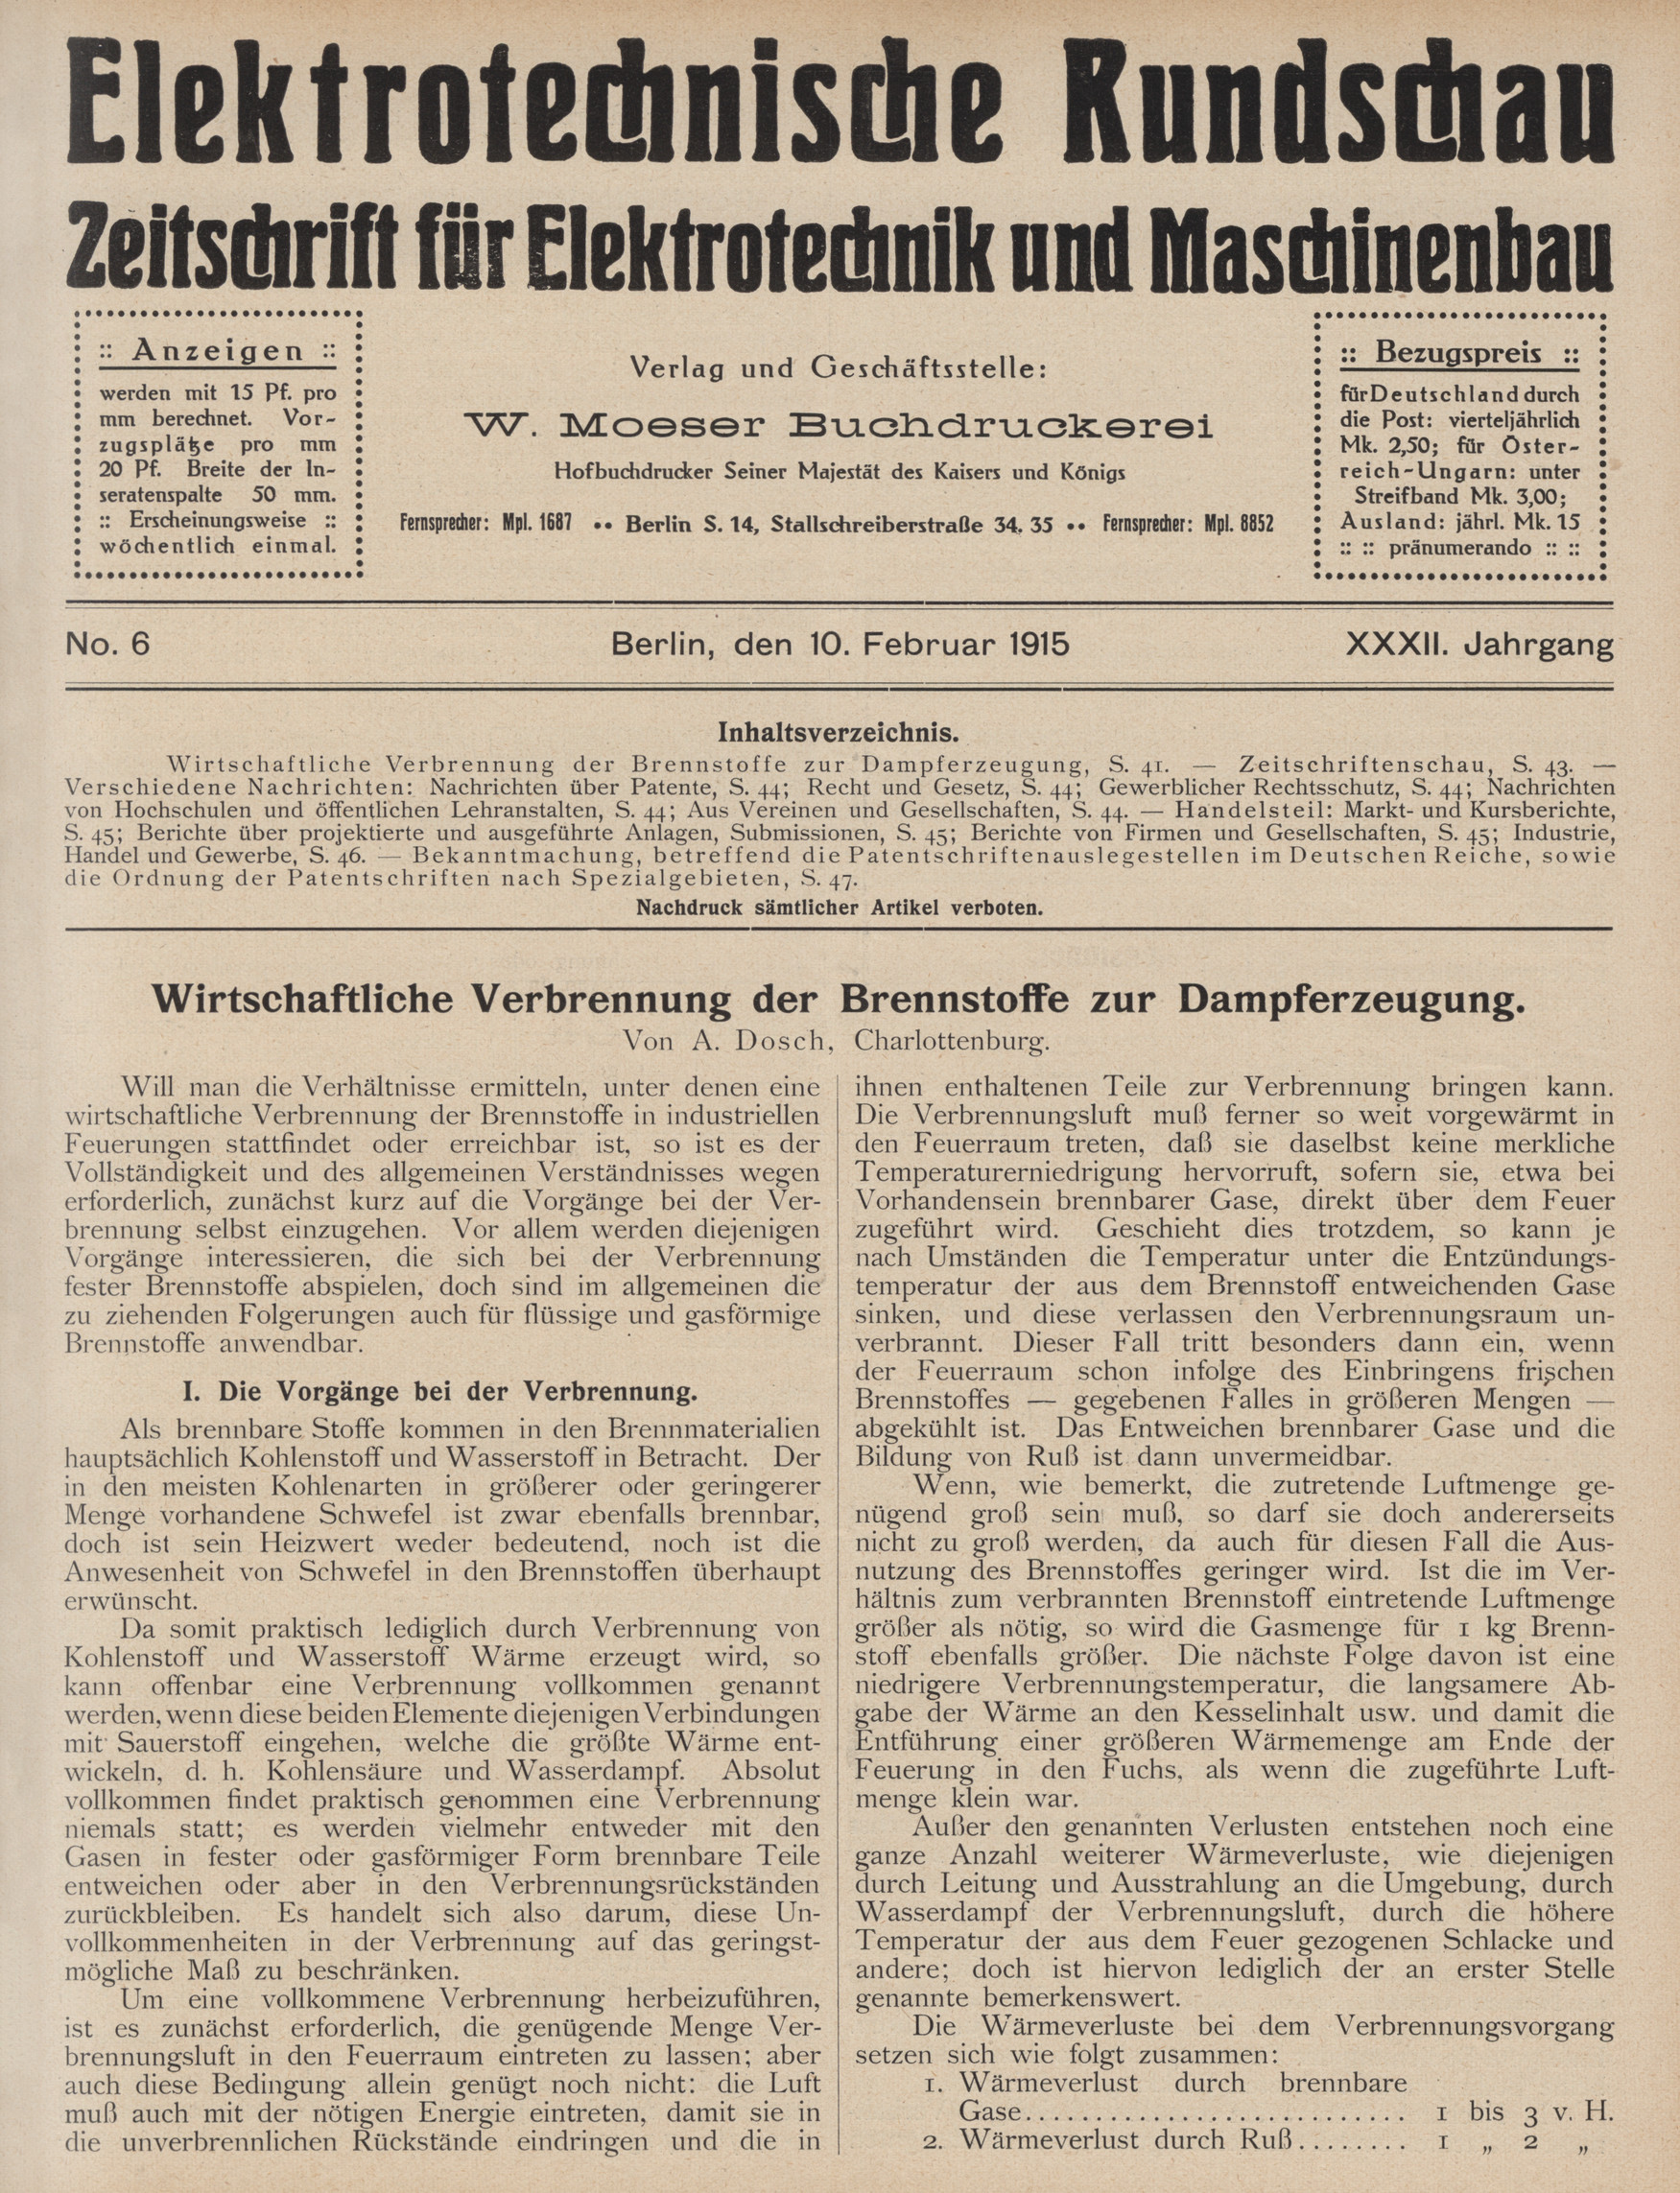 Elektrotechnische Rundschau : Zeitschrift für Elektrotechnik und Maschinenbau + Polytechnische Rundschau, No. 6, XXXII. Jahrgang